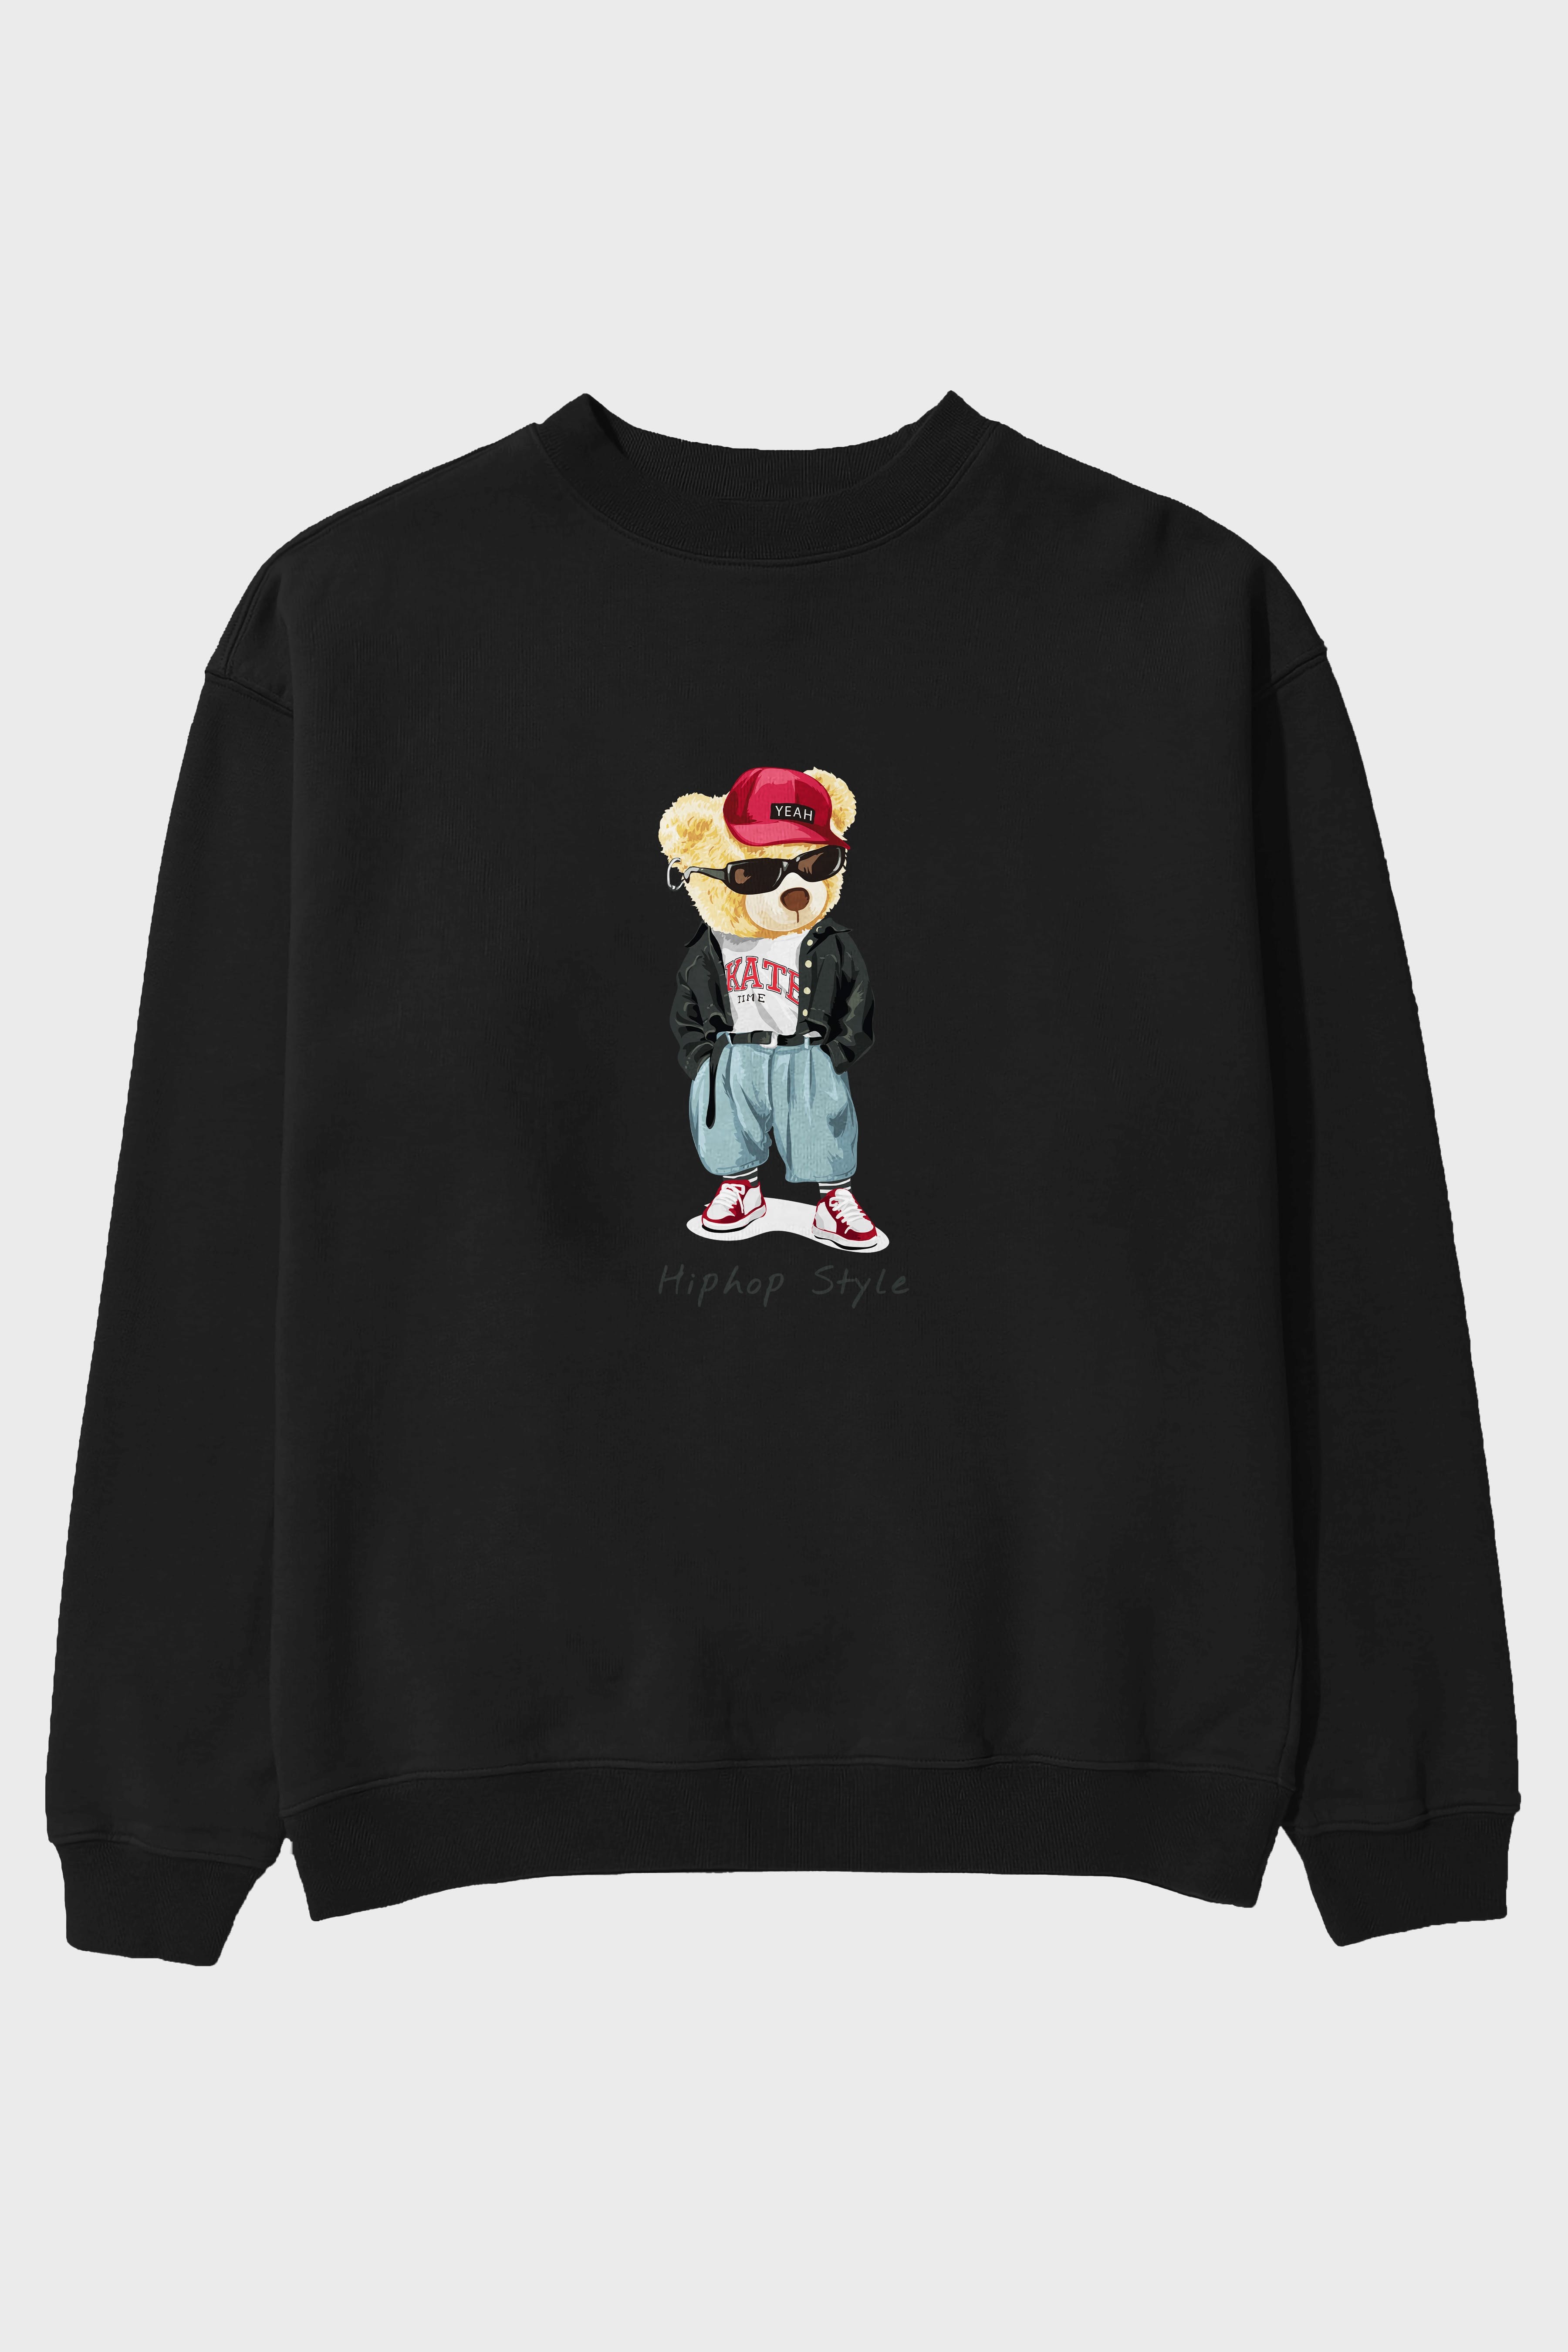 Teddy Bear Hiphop Style Ön Baskılı Oversize Sweatshirt Erkek Kadın Unisex